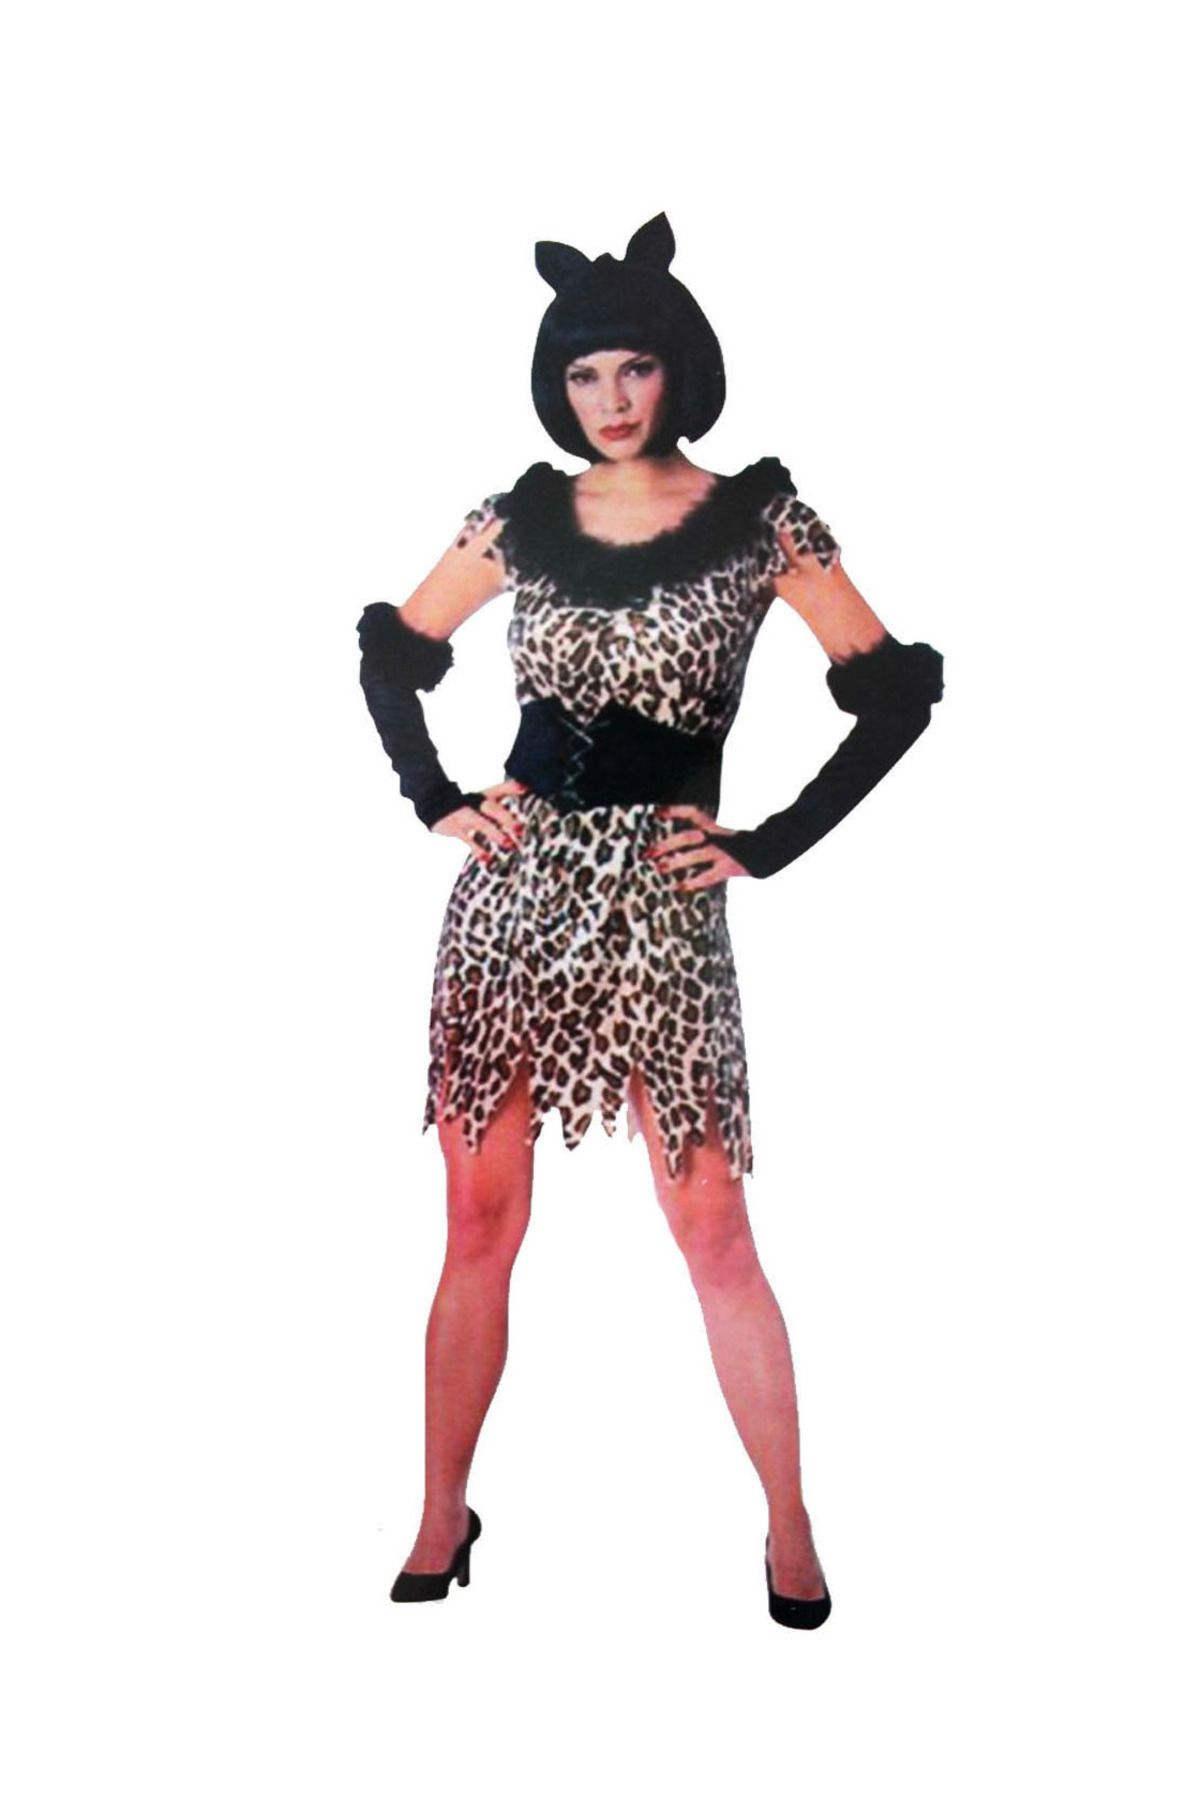 Pareyra Yetişkin Leopar Kostümü - Kedi Kız Kostümü - Taş Devri Kostümü (44PYR34)